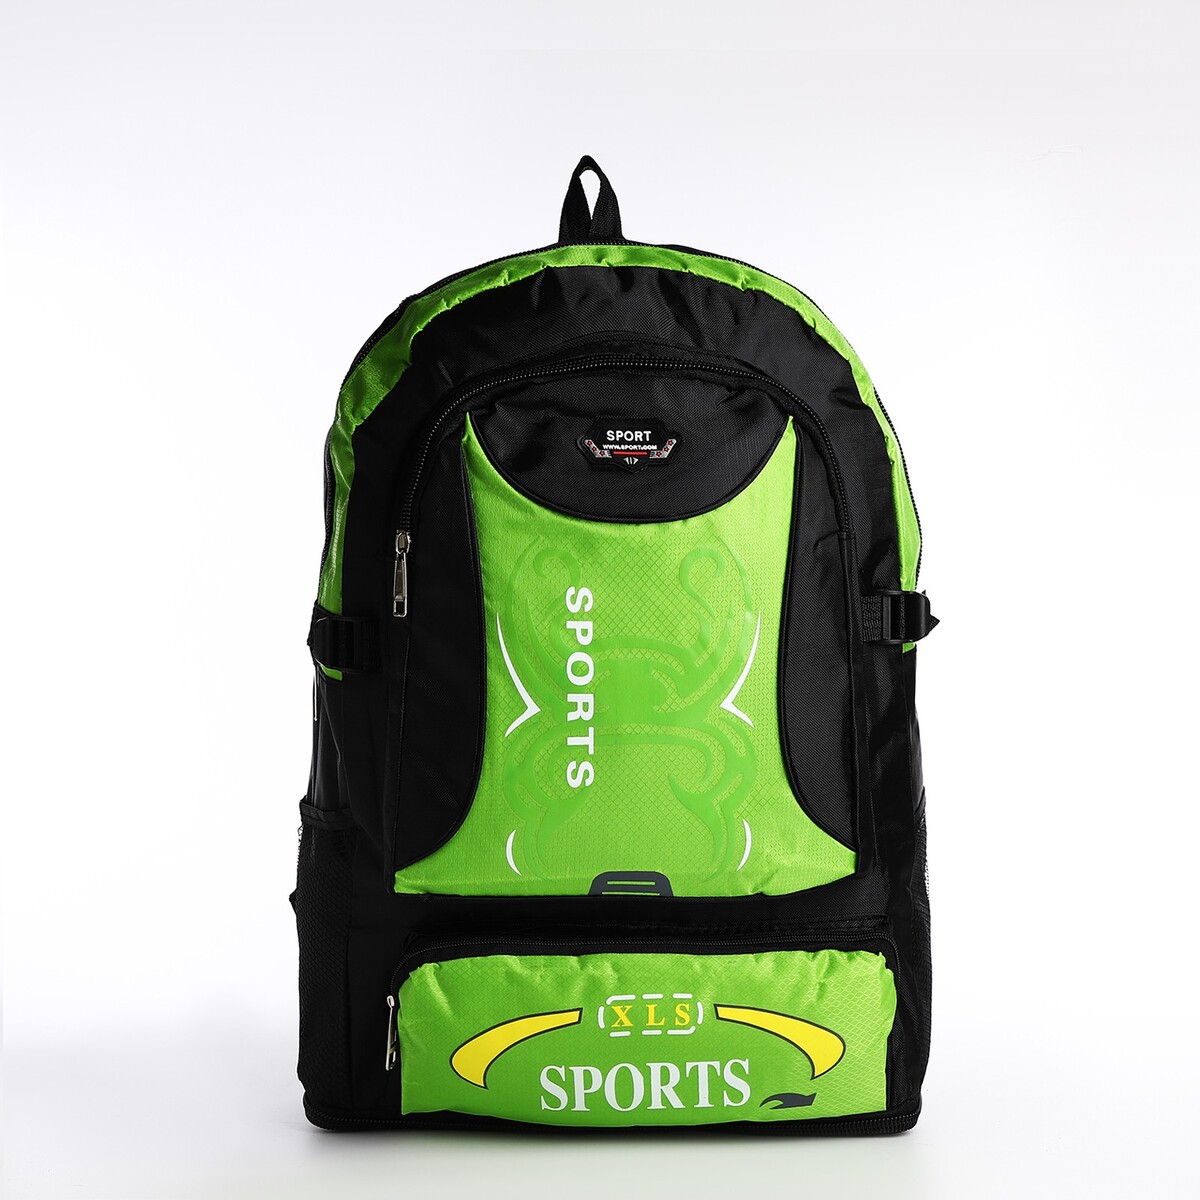 Рюкзак на молнии с увеличением, 55л, 5 наружных карманов, цвет зеленый рюкзак на молнии с увеличением 55л 5 наружных карманов